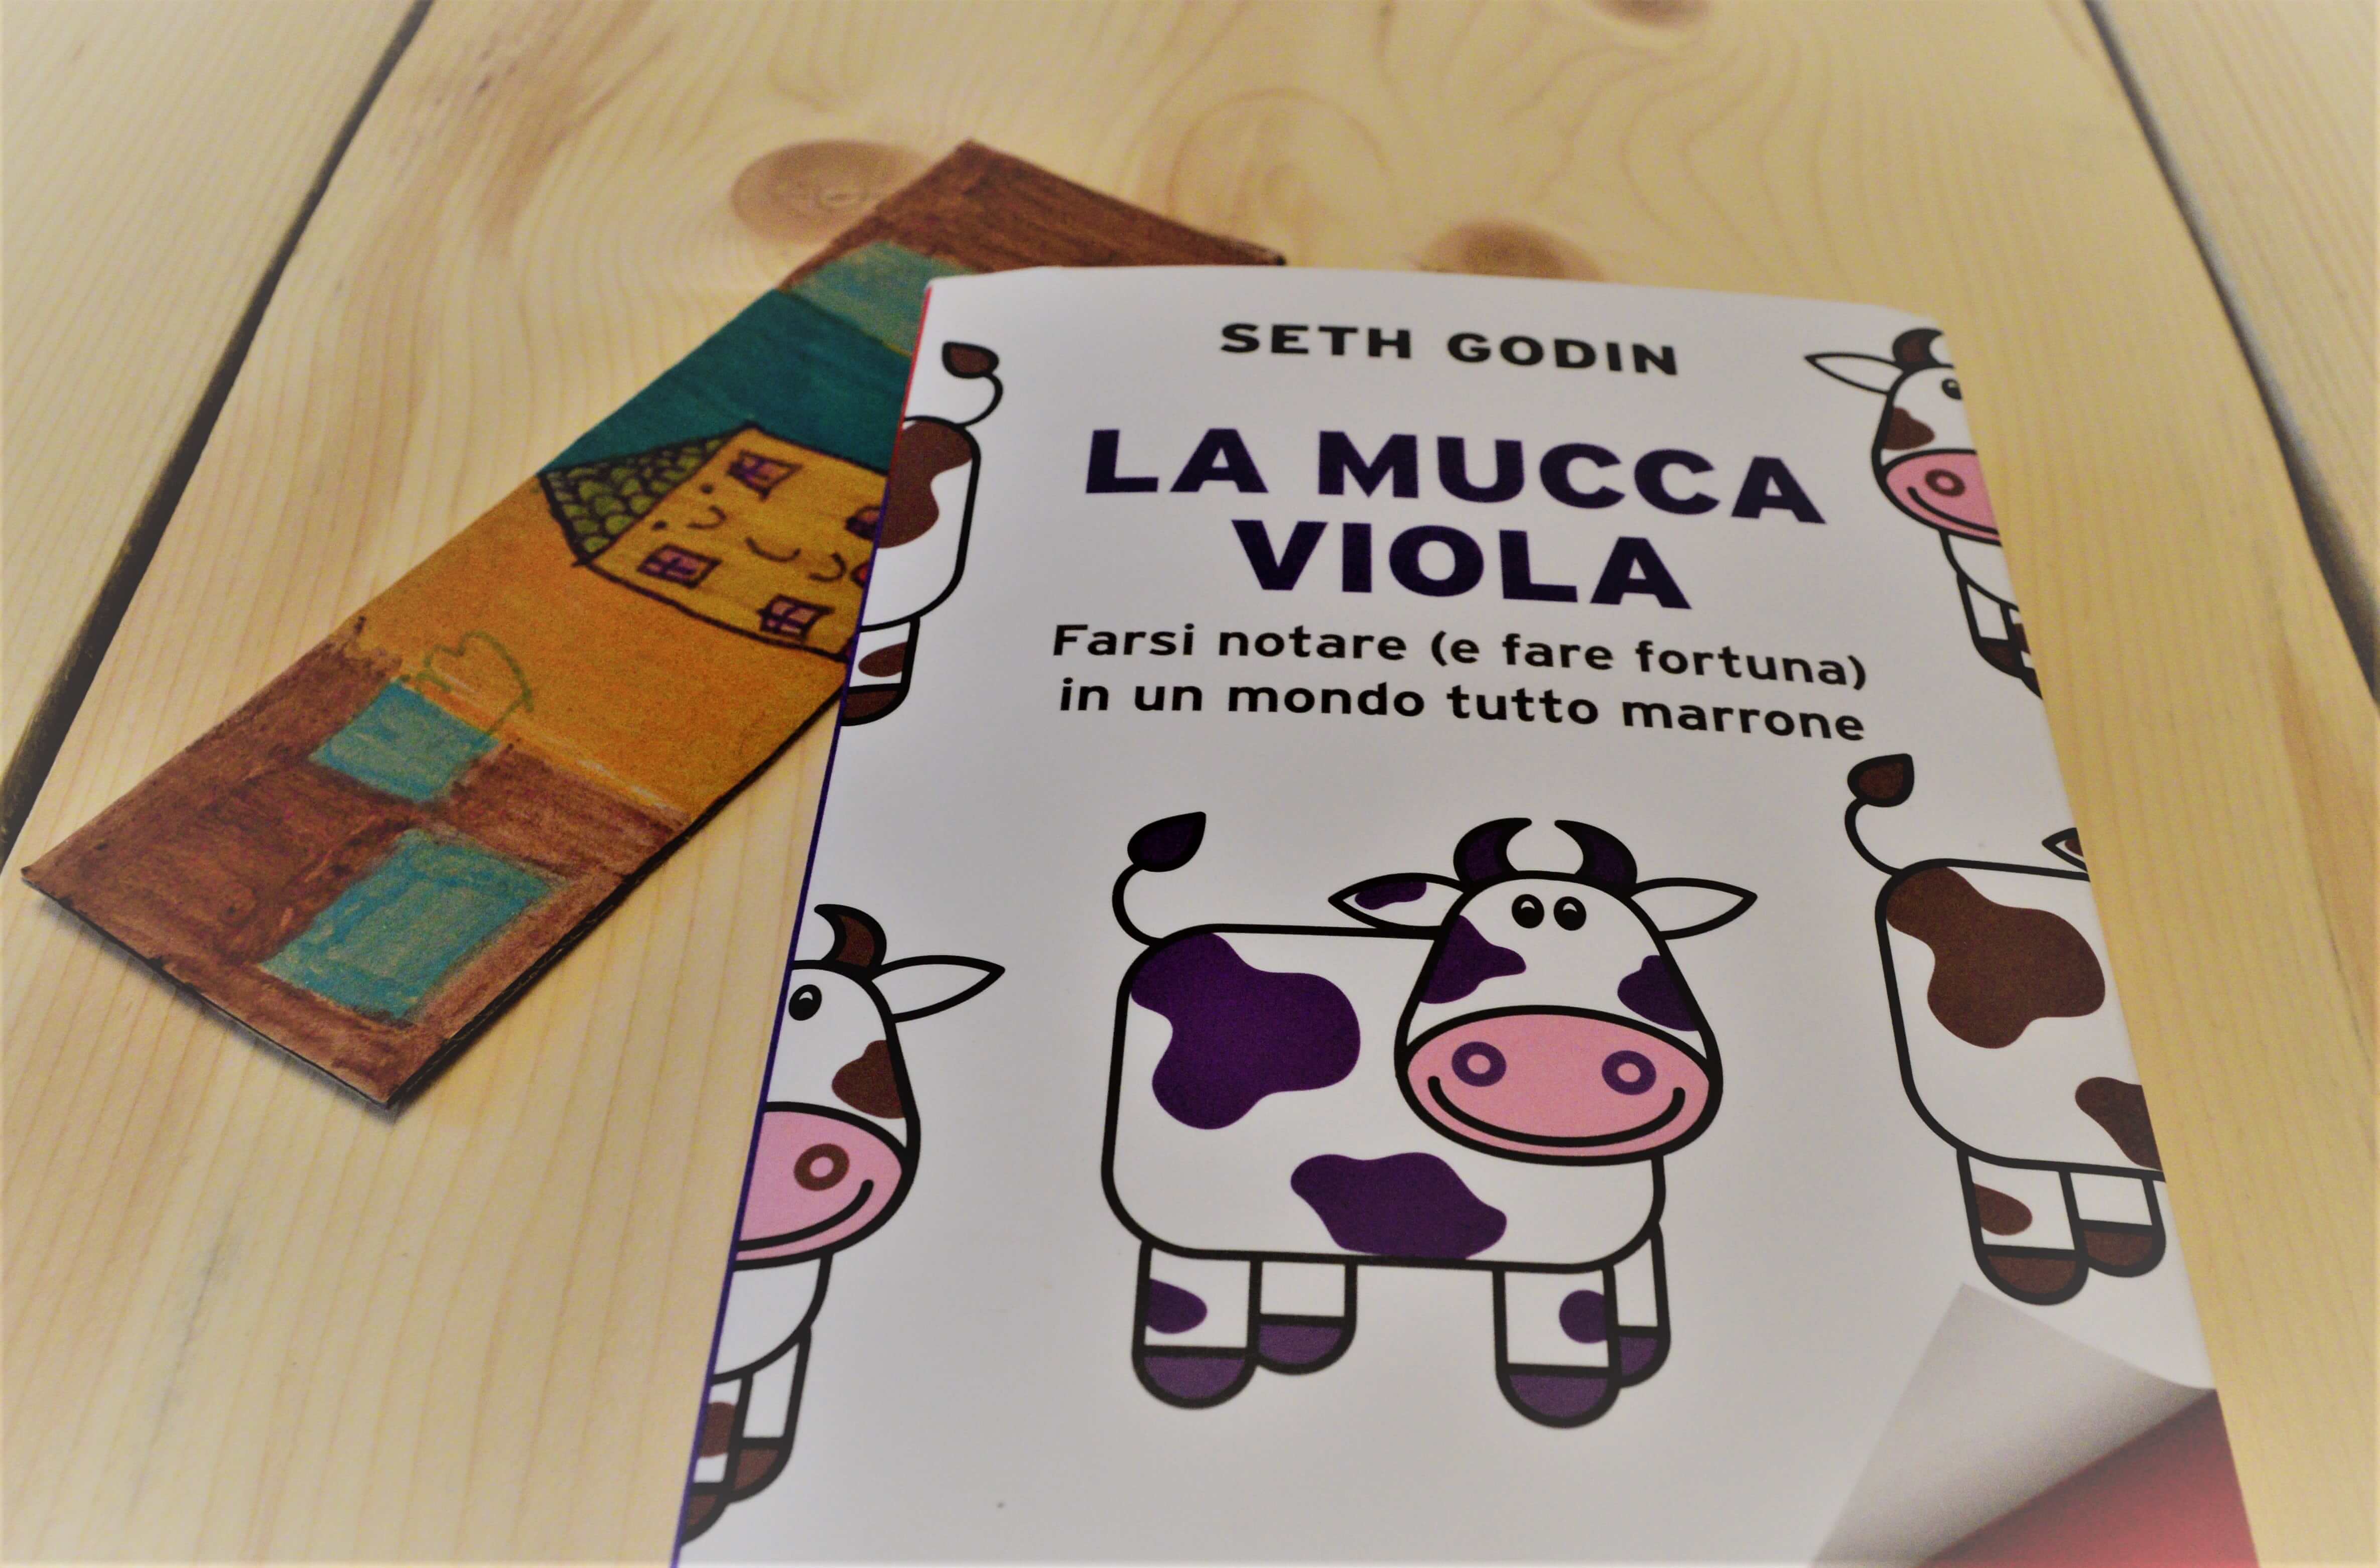 La mucca viola di Seth Godin - Euroconference News